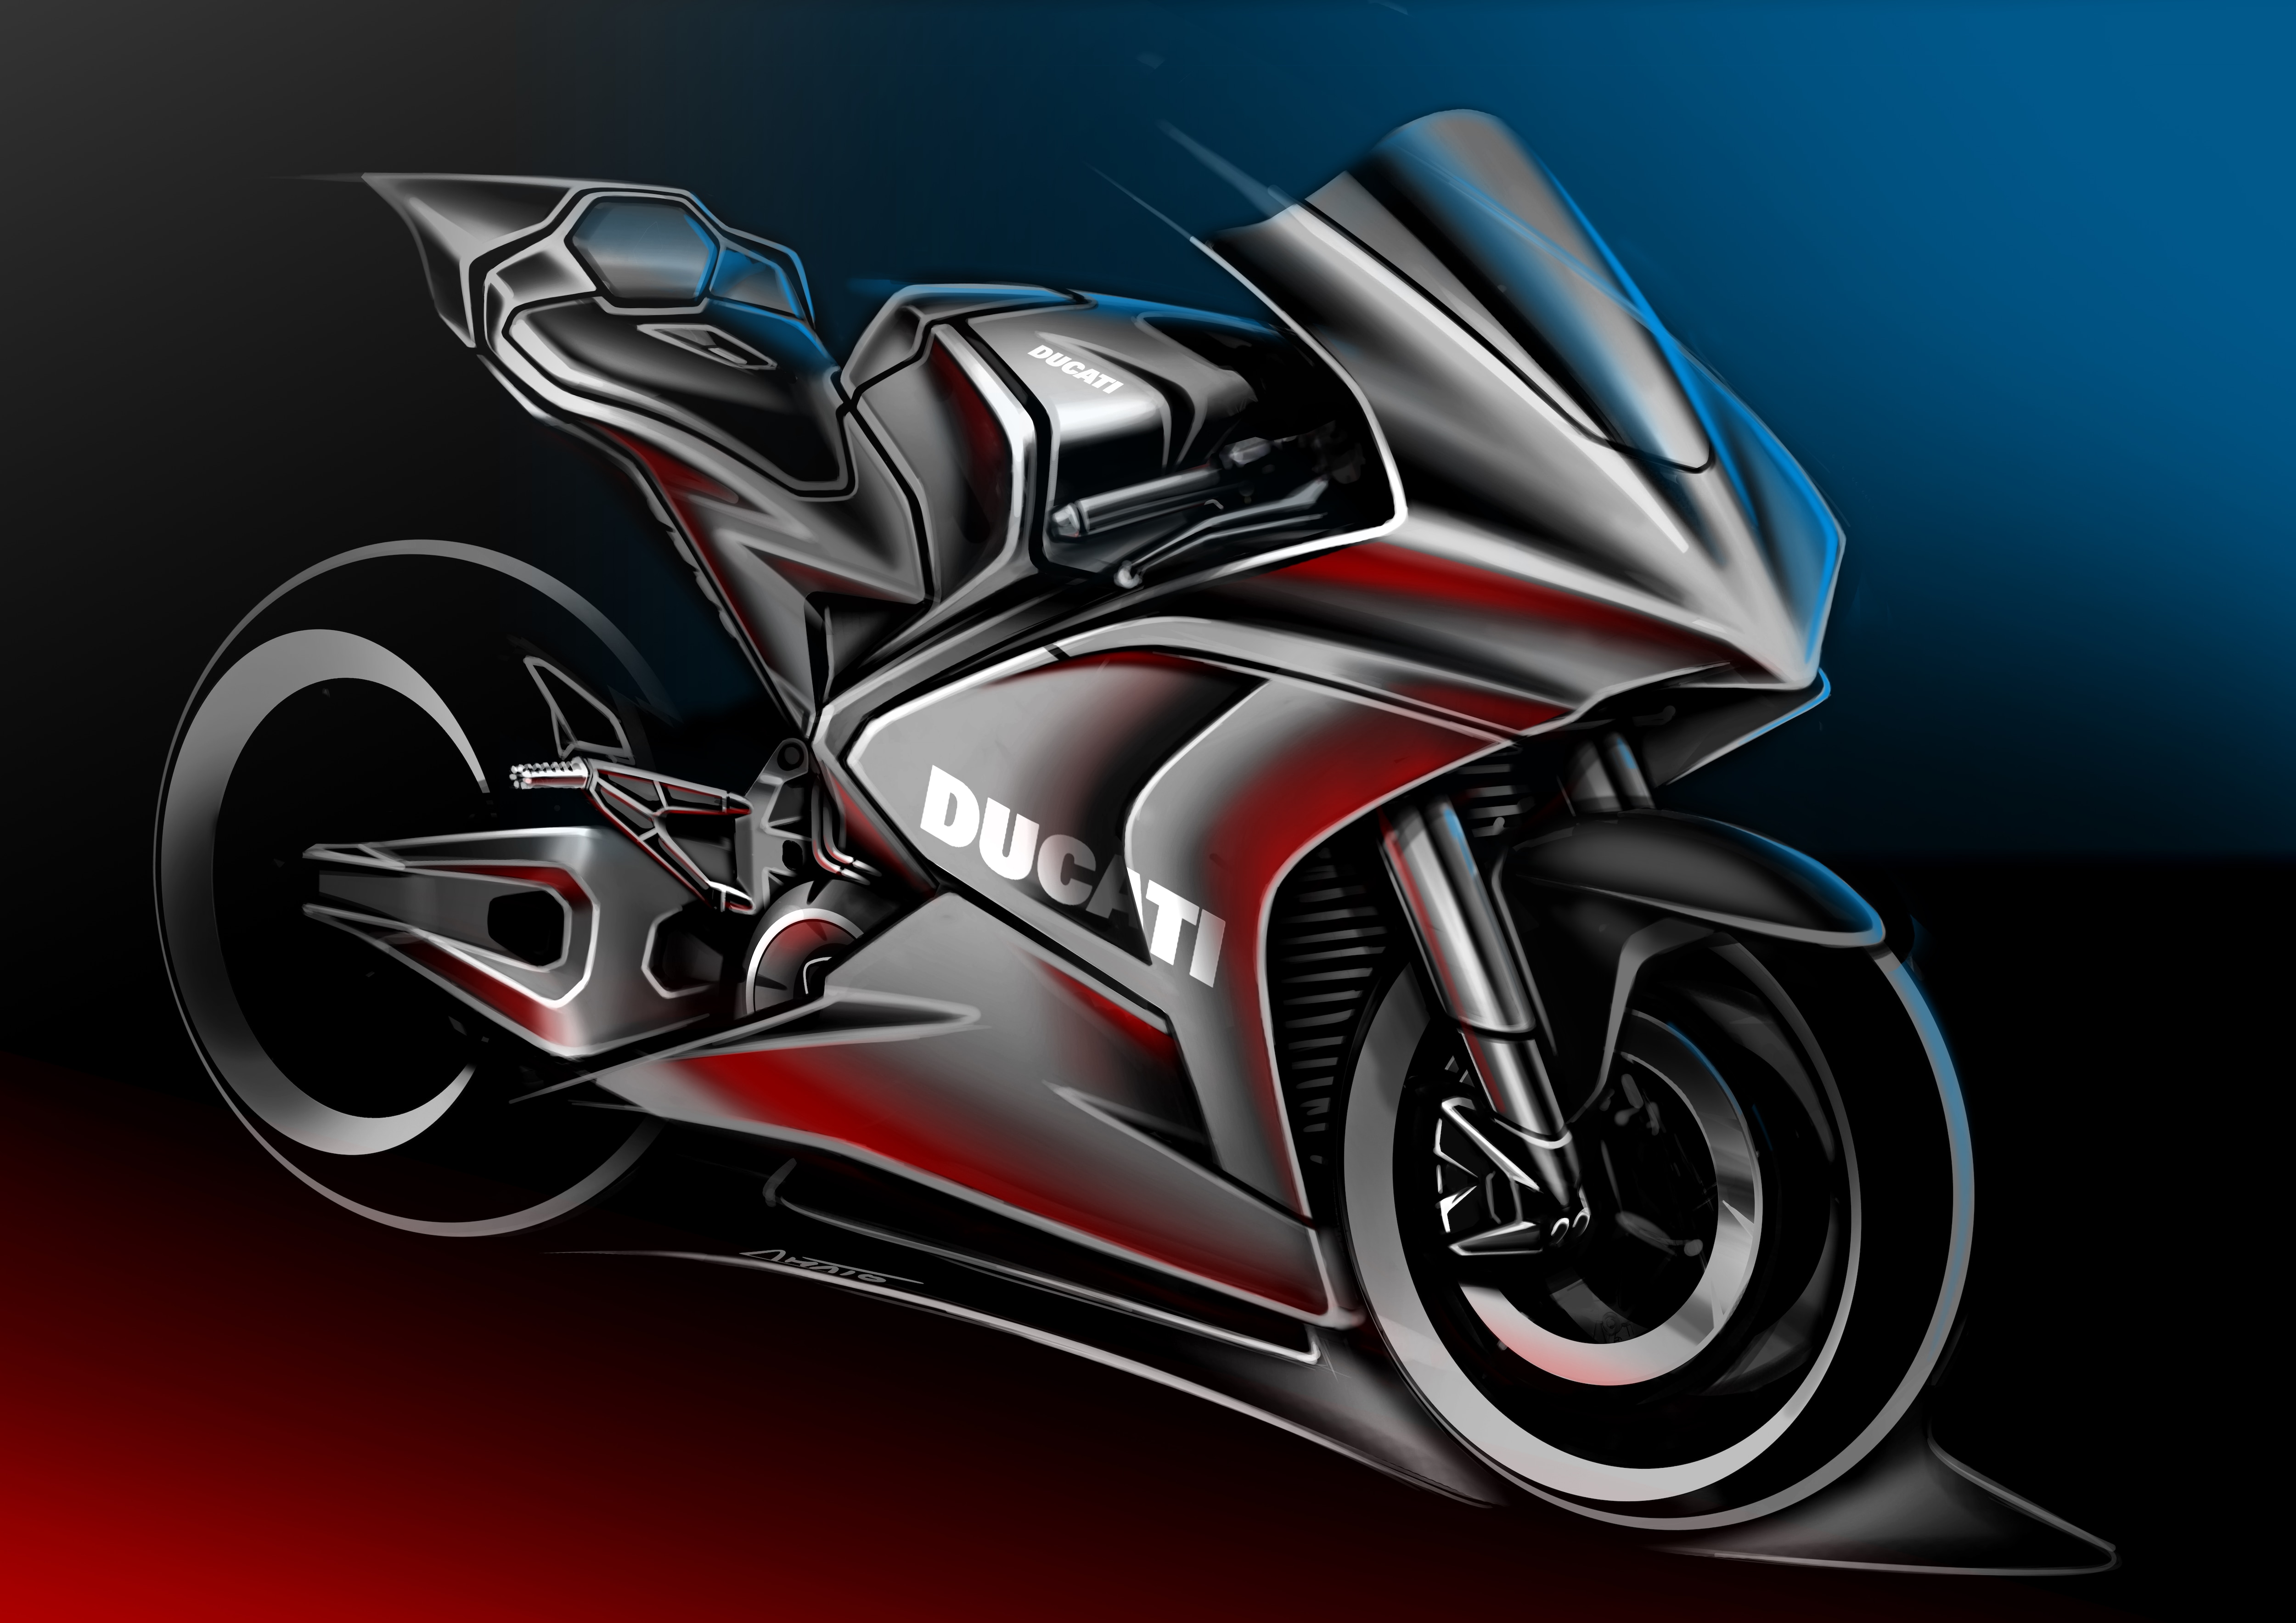 MotoE by Ducati sketch